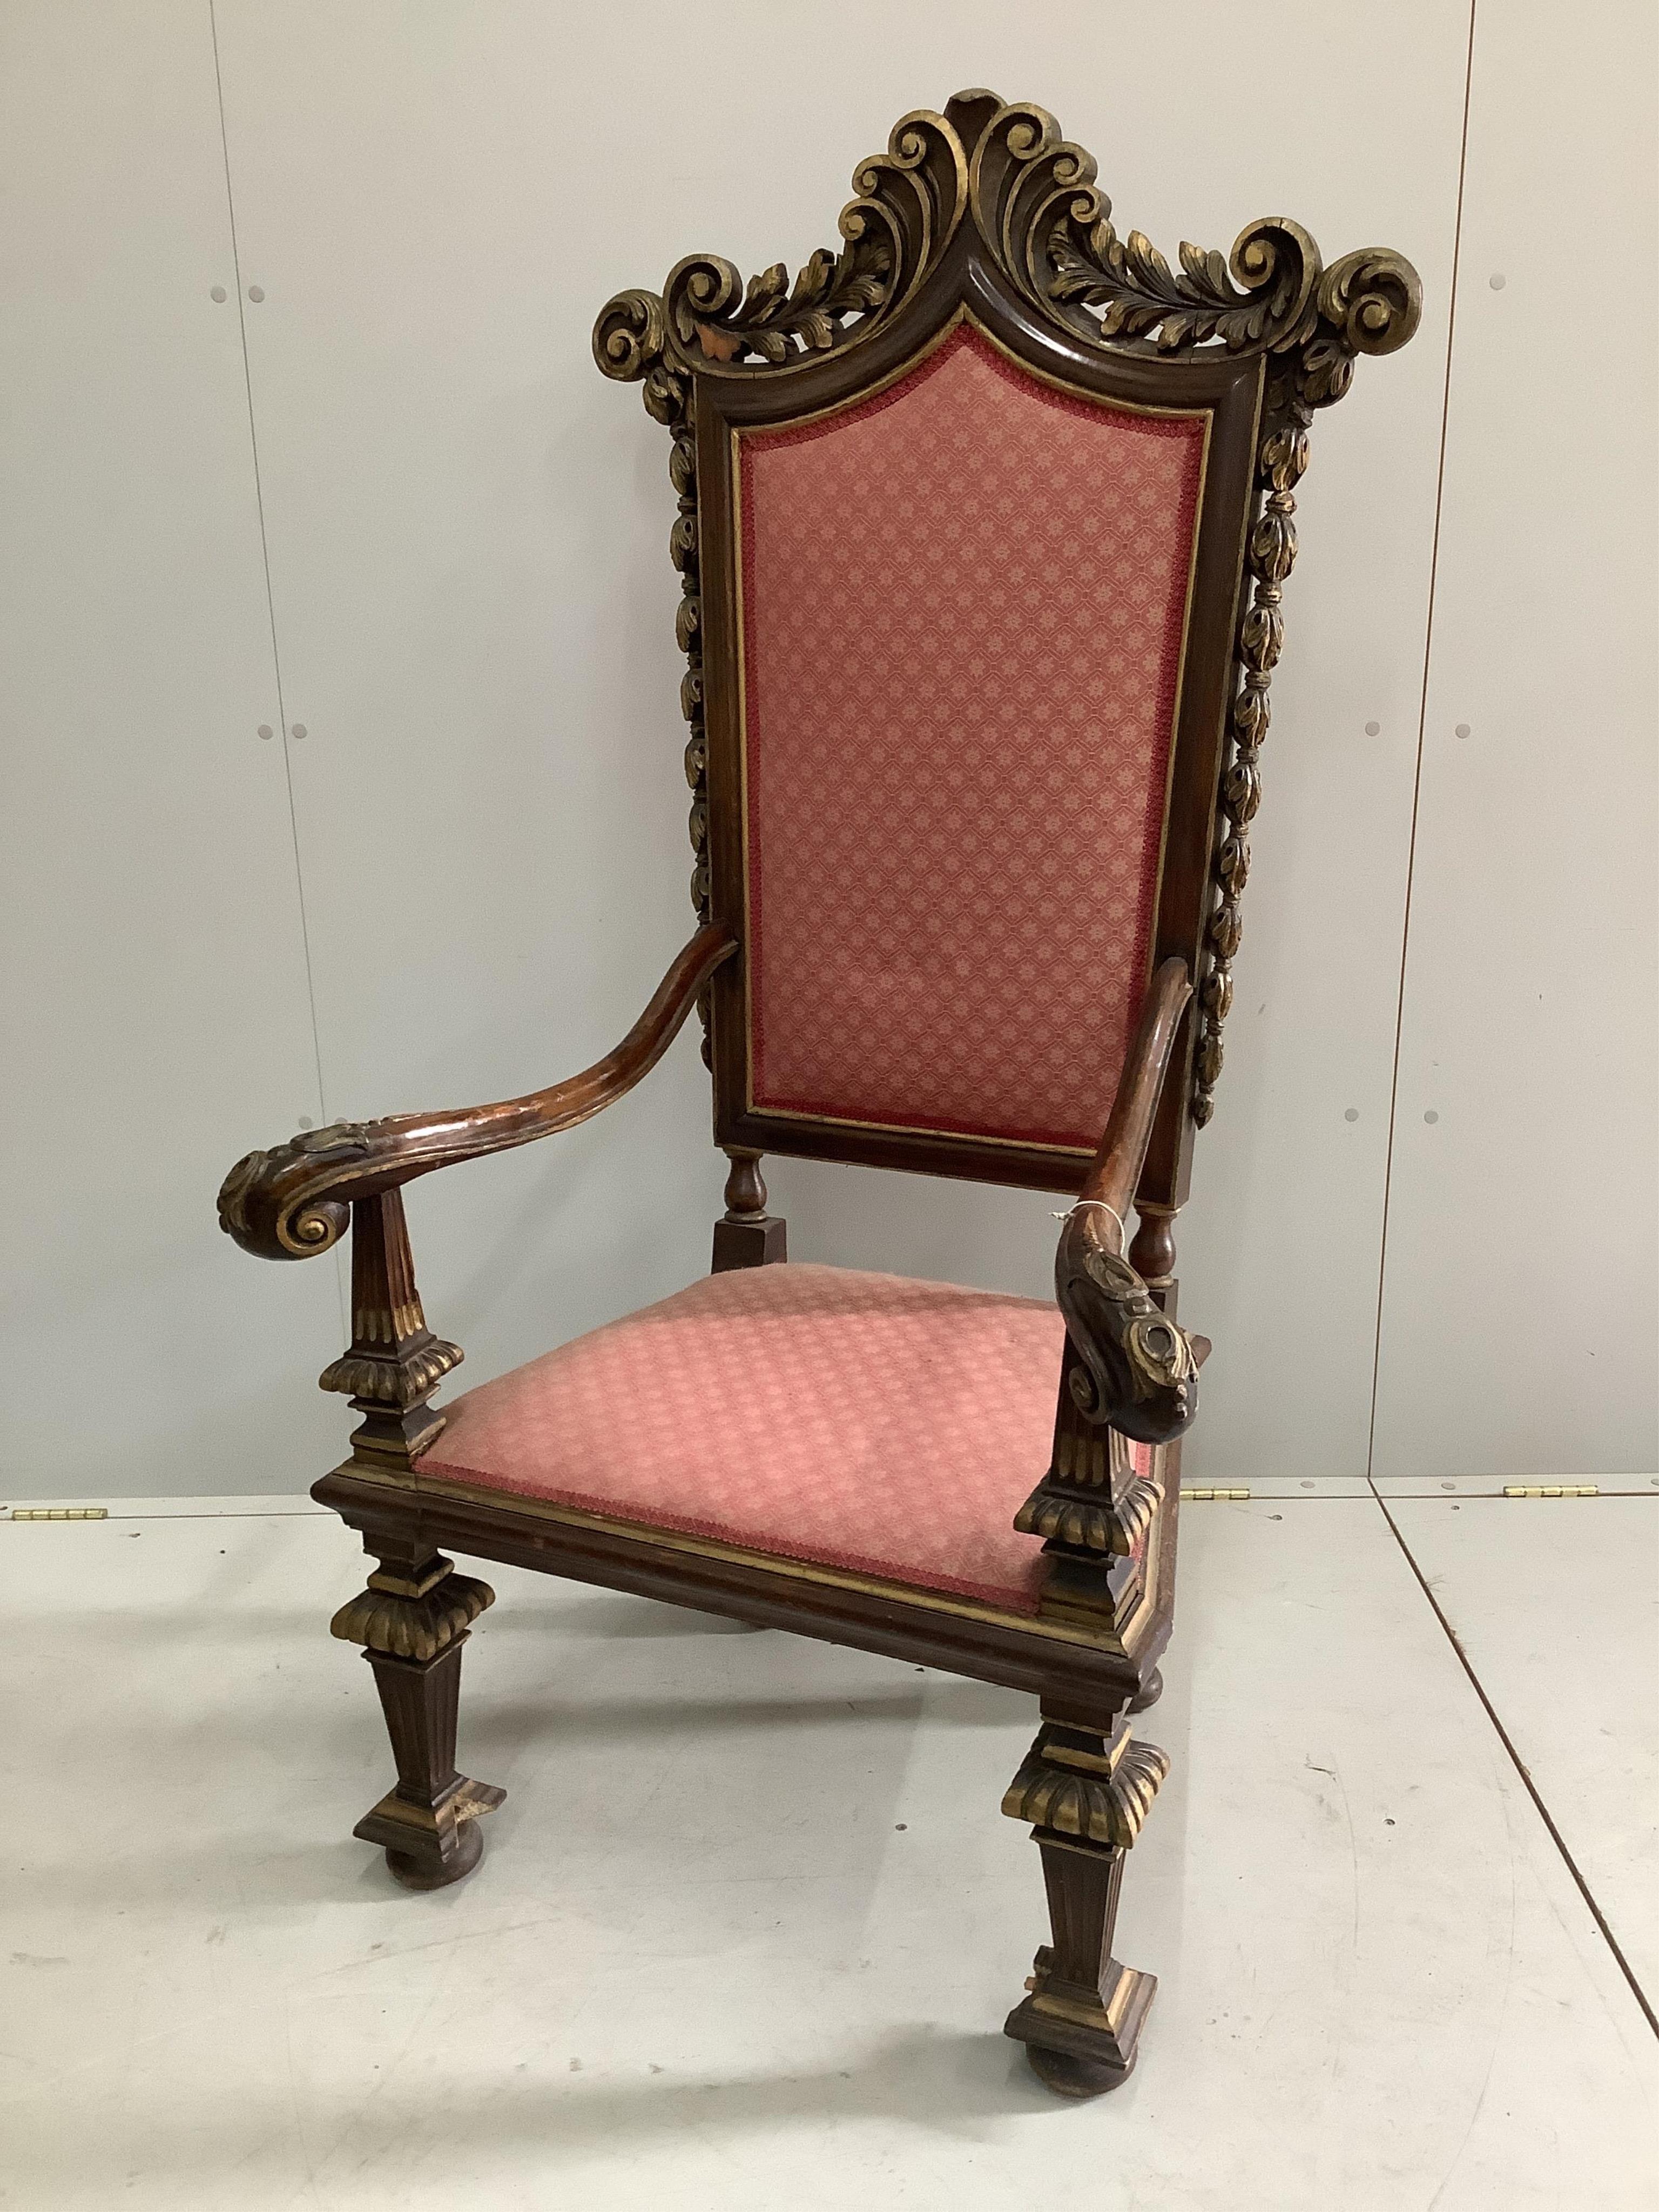 An 18th century style parcel-gilt walnut high back elbow chair. Condition - fair